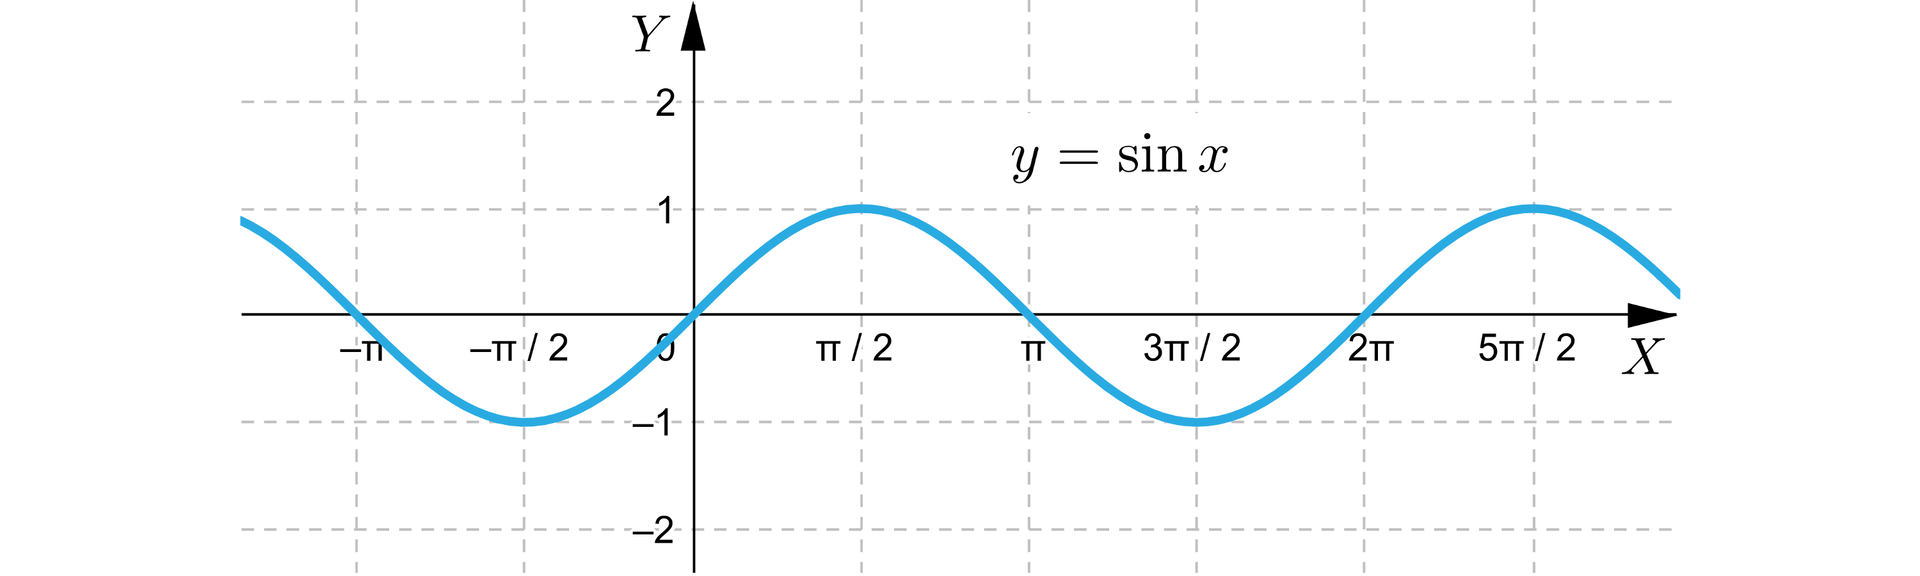 Ilustracja przedstawia układ współrzędnych z poziomą osią X od minus pi do pięciu drugich pi oraz z pionową osią Y od minus dwóch do dwóch. Na płaszczyźnie narysowana jest sinusoida.